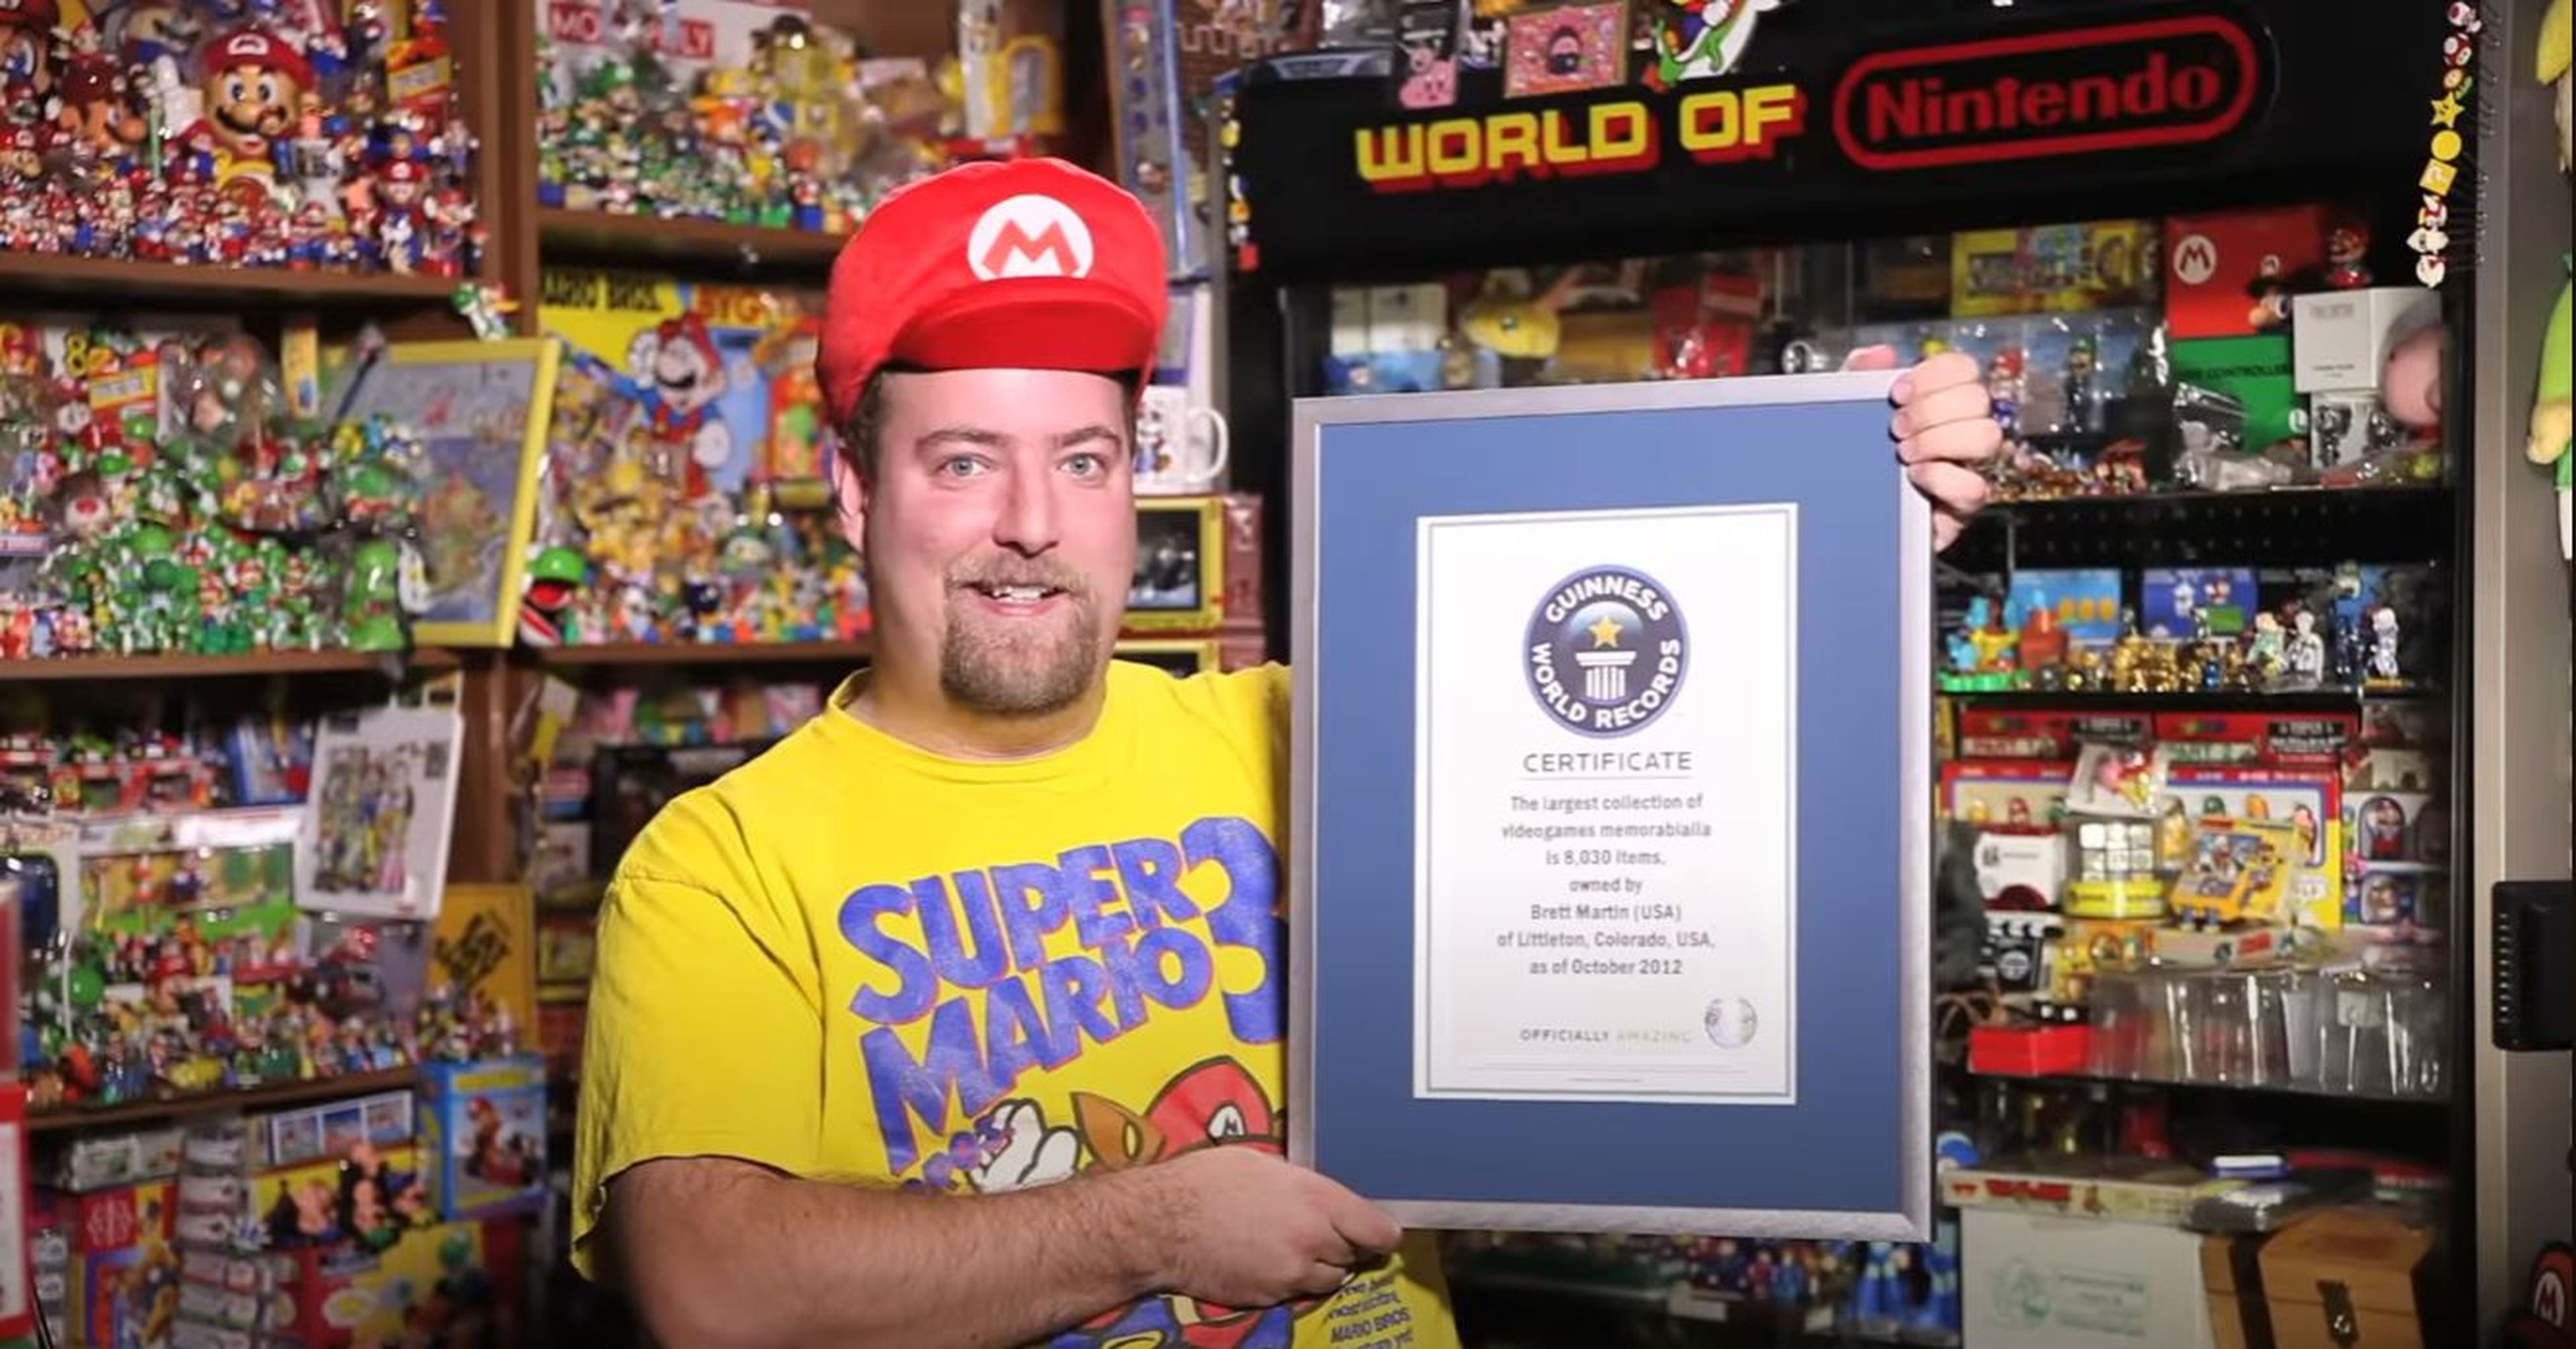 Brett Matin sosteniendo el récord guinness de coleccionista de merchandising de videojuegos